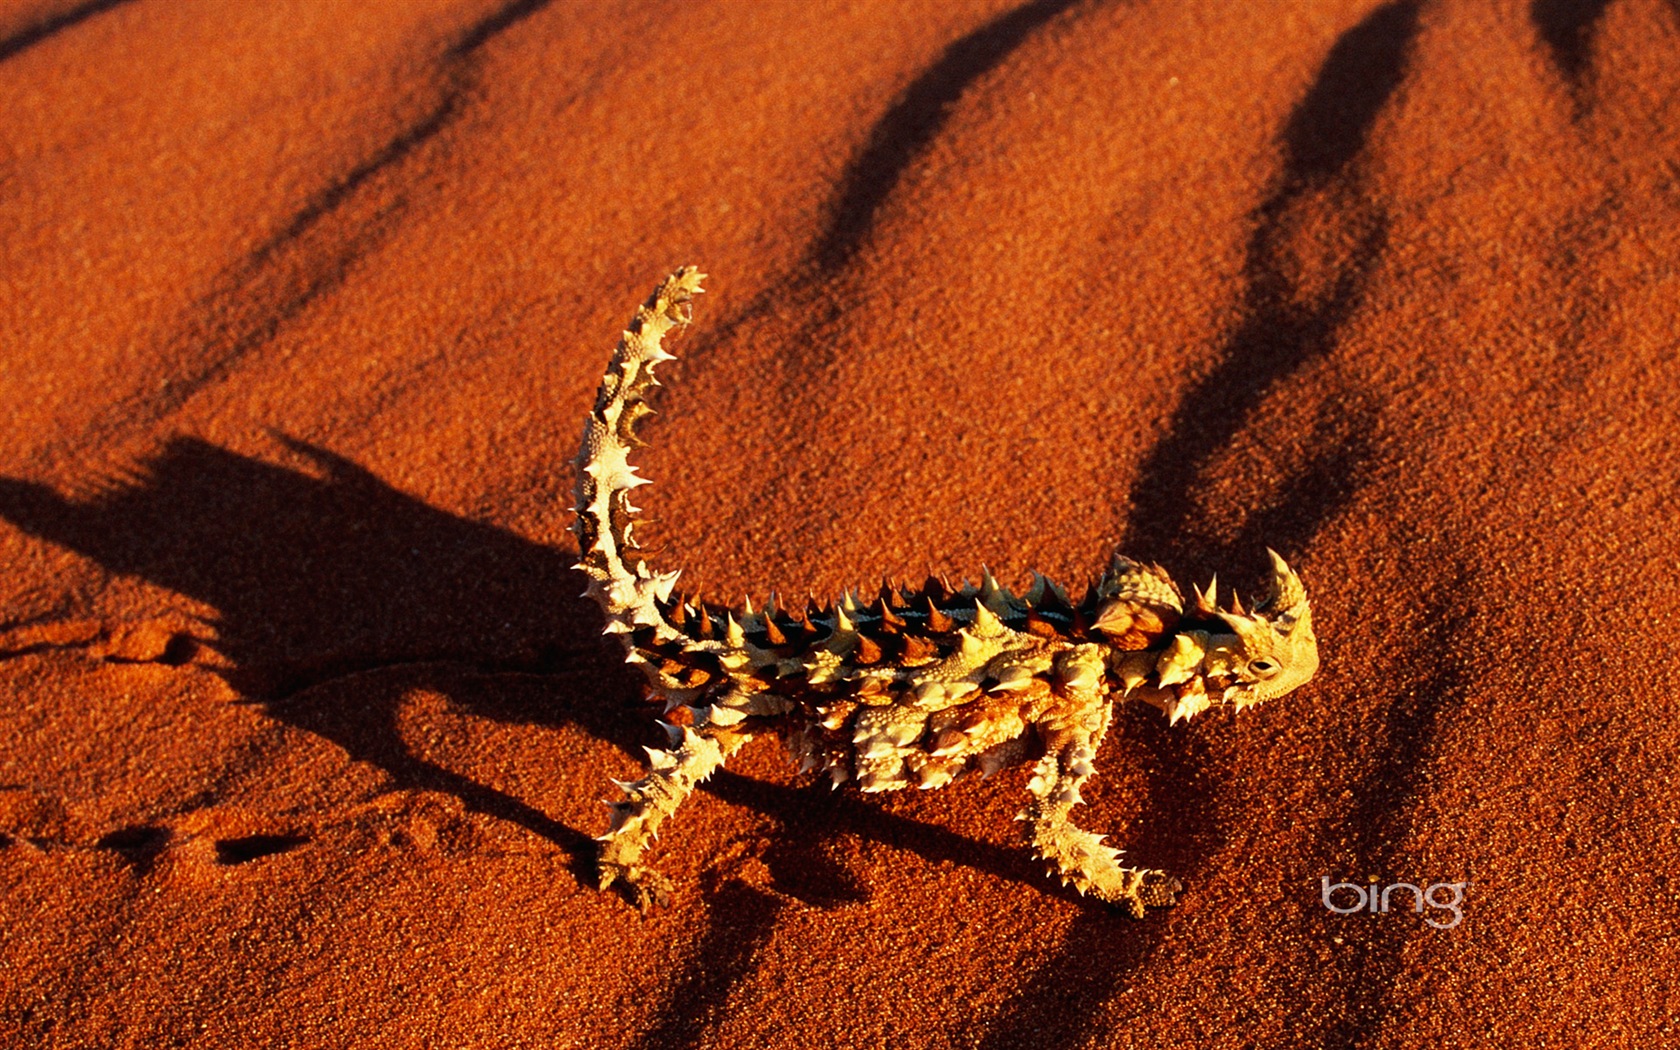 Bing Australie thème fonds d'écran HD, animaux, nature, bâtiments #7 - 1680x1050